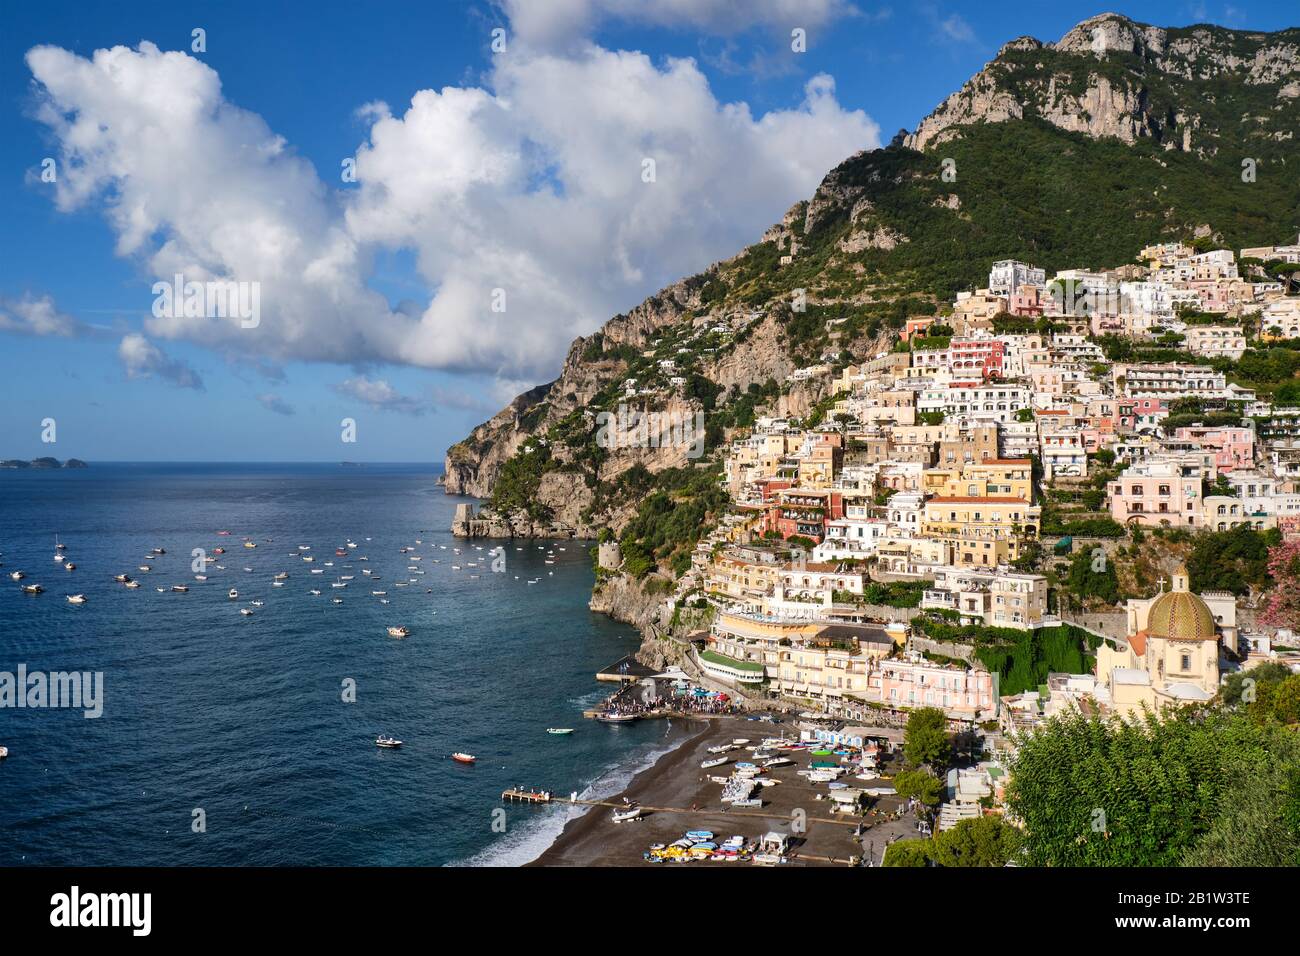 The famous village of Positano on the italian Amalfi Coast Stock Photo